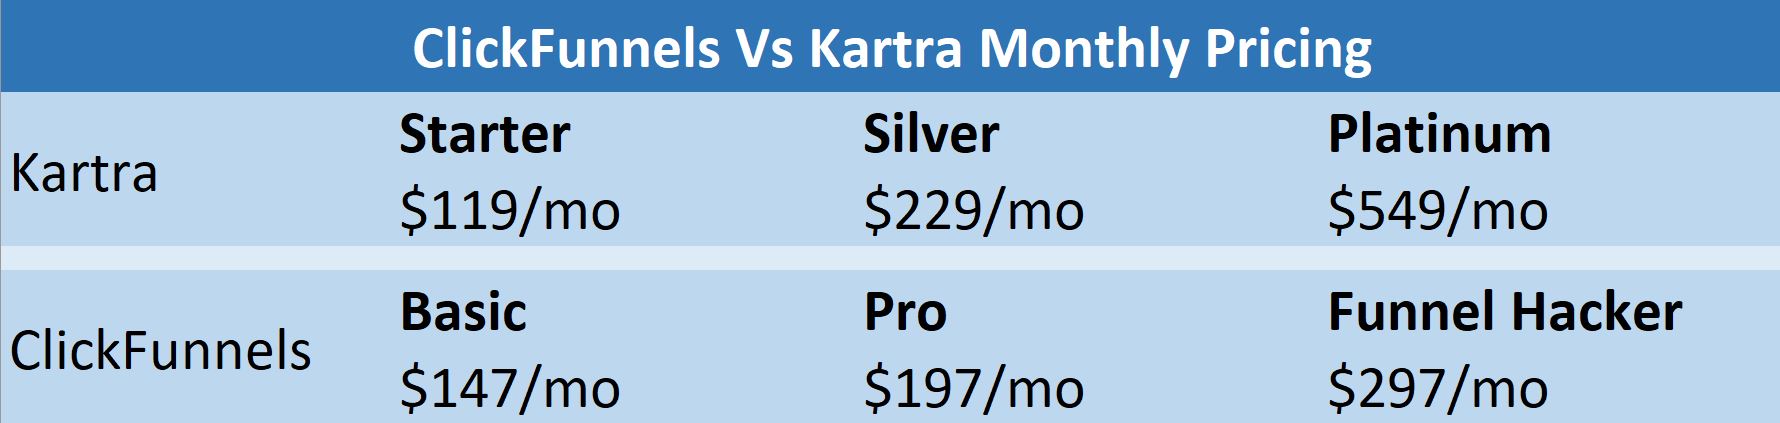 clickfunnel price vs kartra table